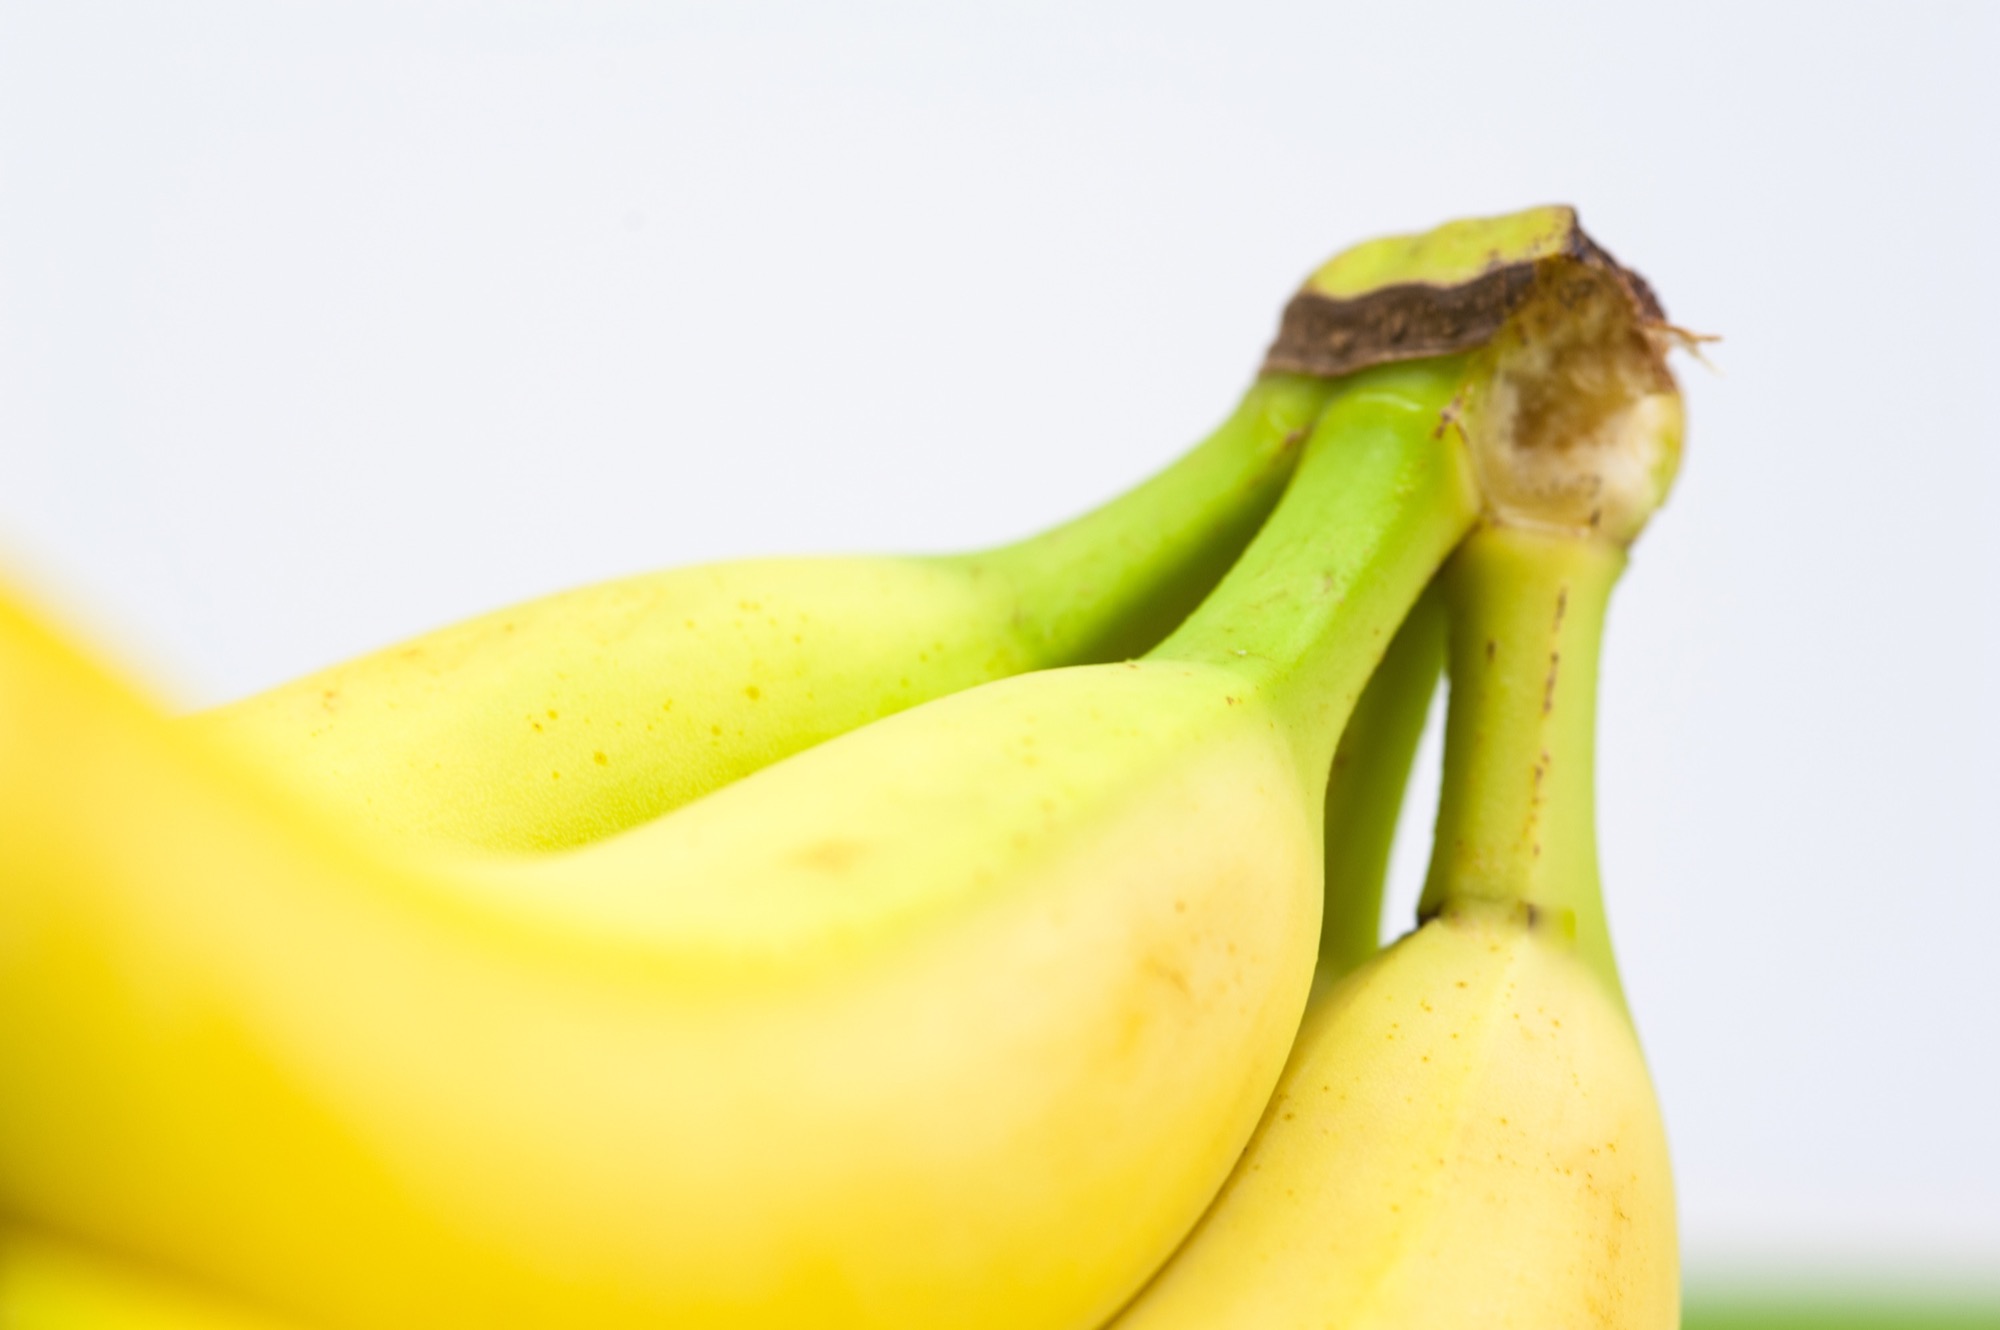 bananen